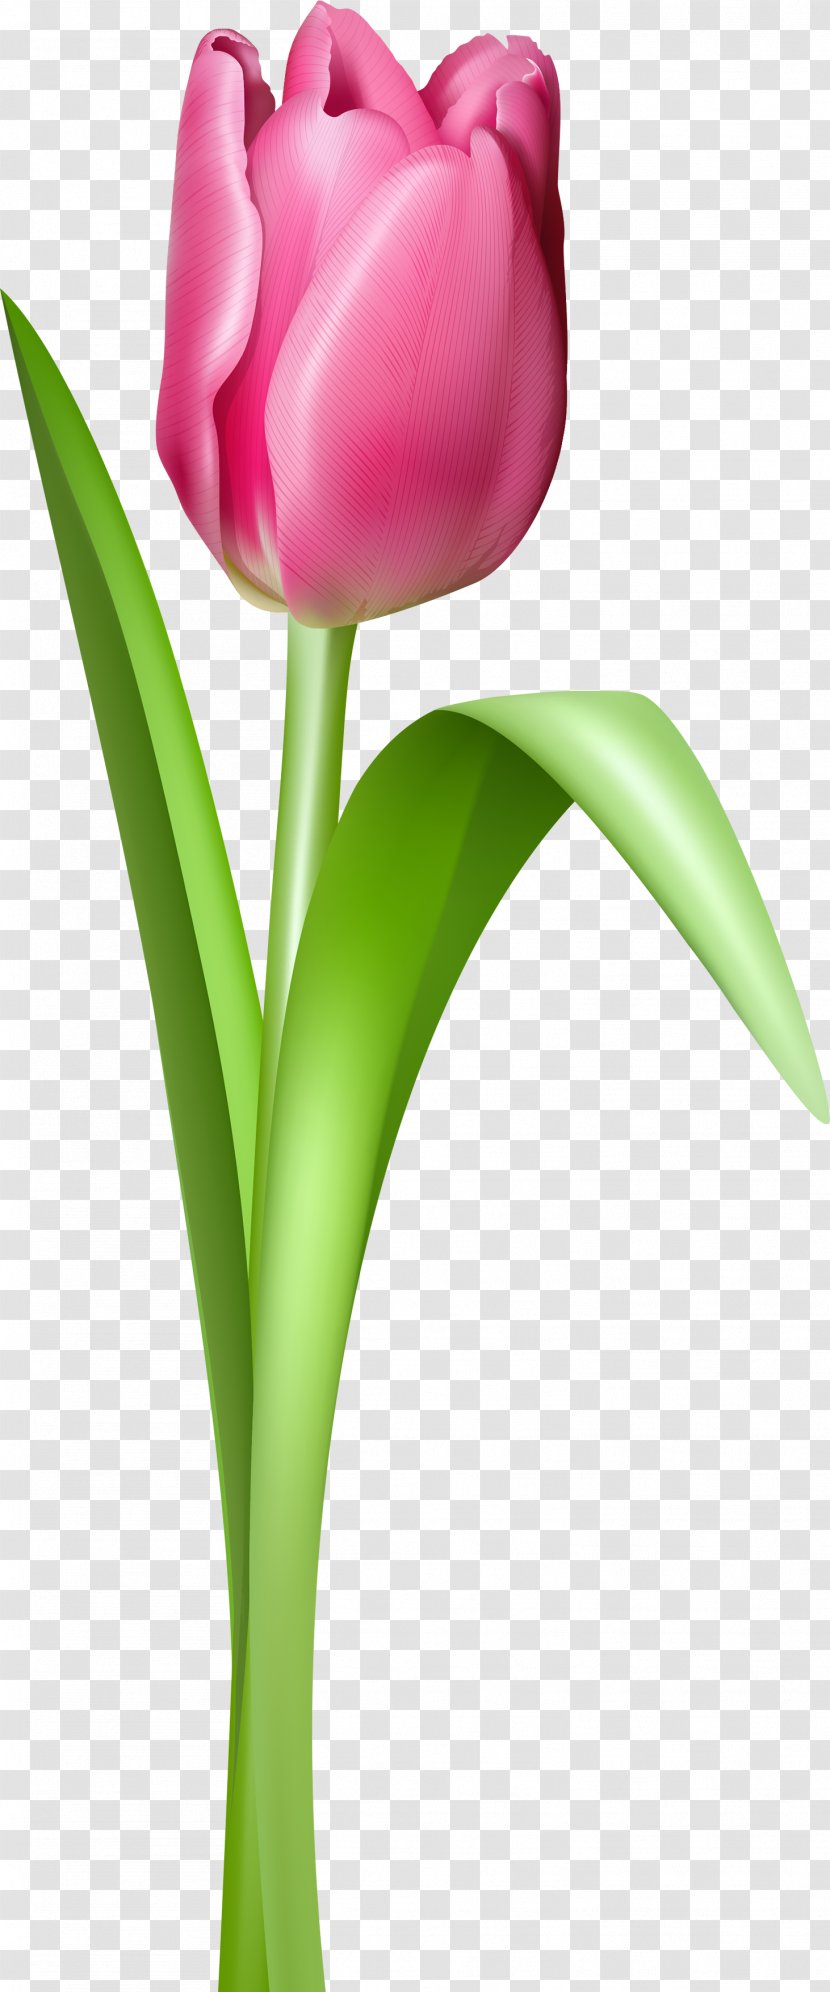 Tulip Clip Art - Plant - Image Transparent PNG